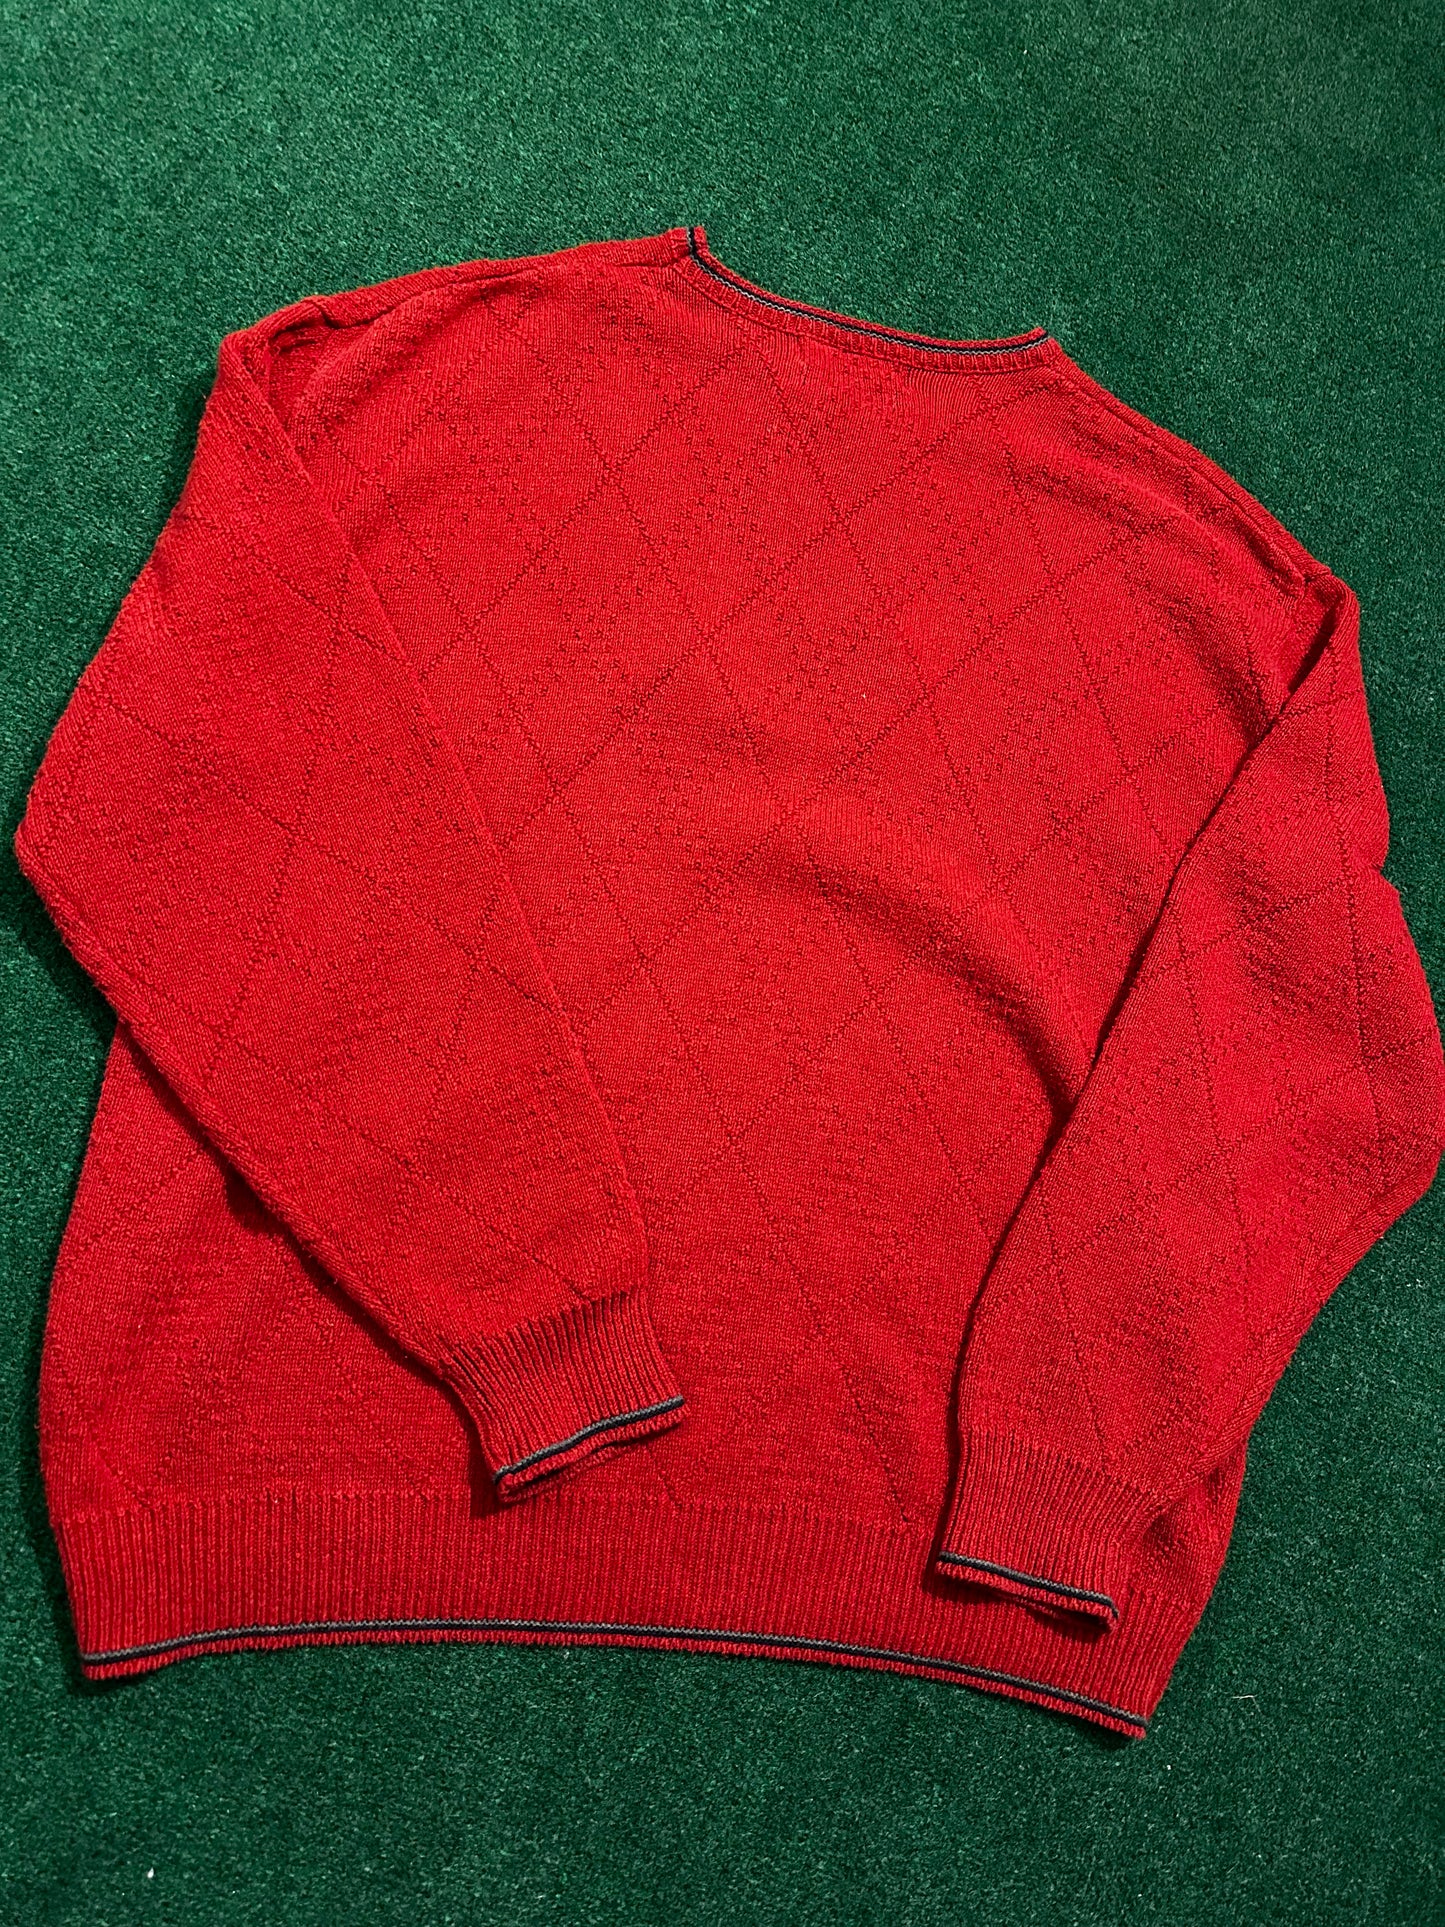 Vintage Pinnacle Pullover